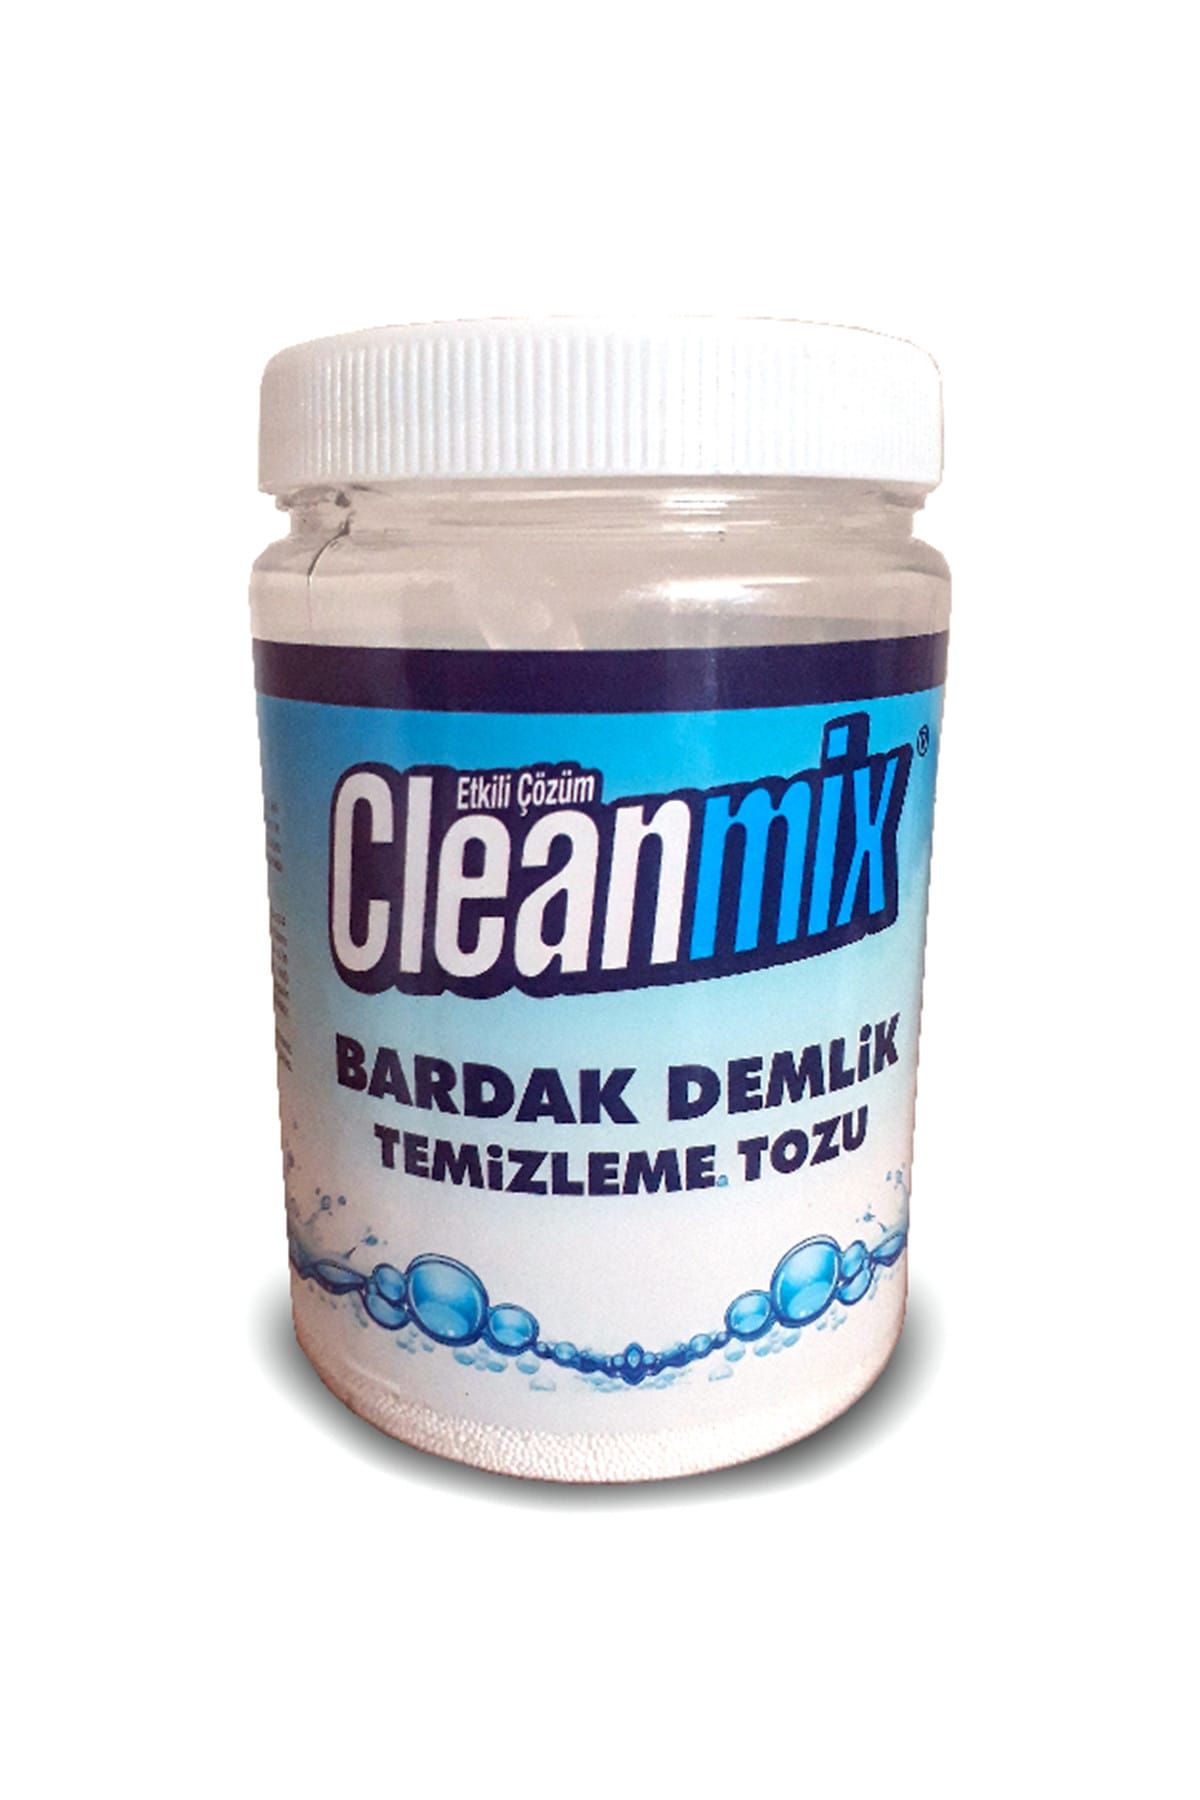 Cleanmix Demlik Bardak Temizleyici 900 gr